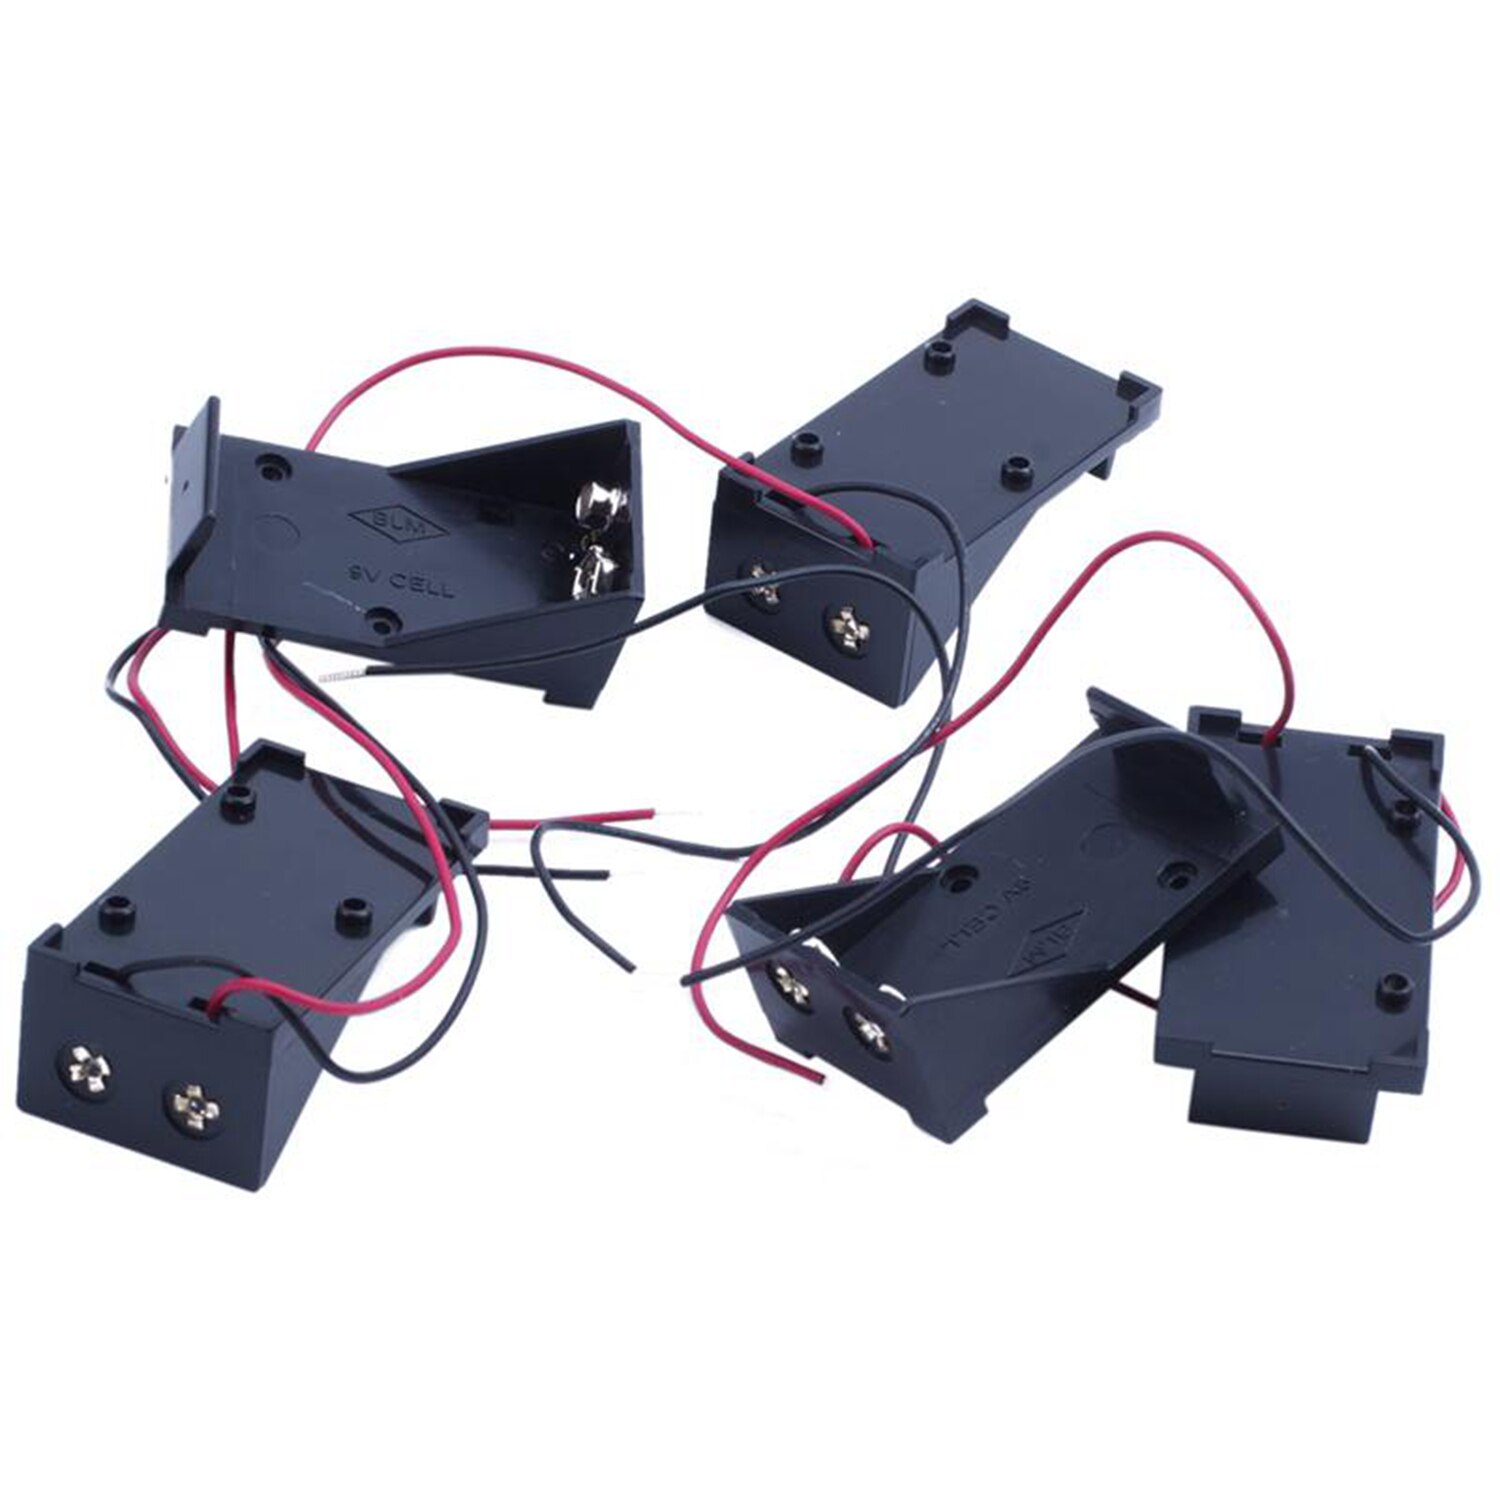 FFYY-5 stukken twee plastic behuizing met kabel 9 V batterijen ondersteunt opslag case covers